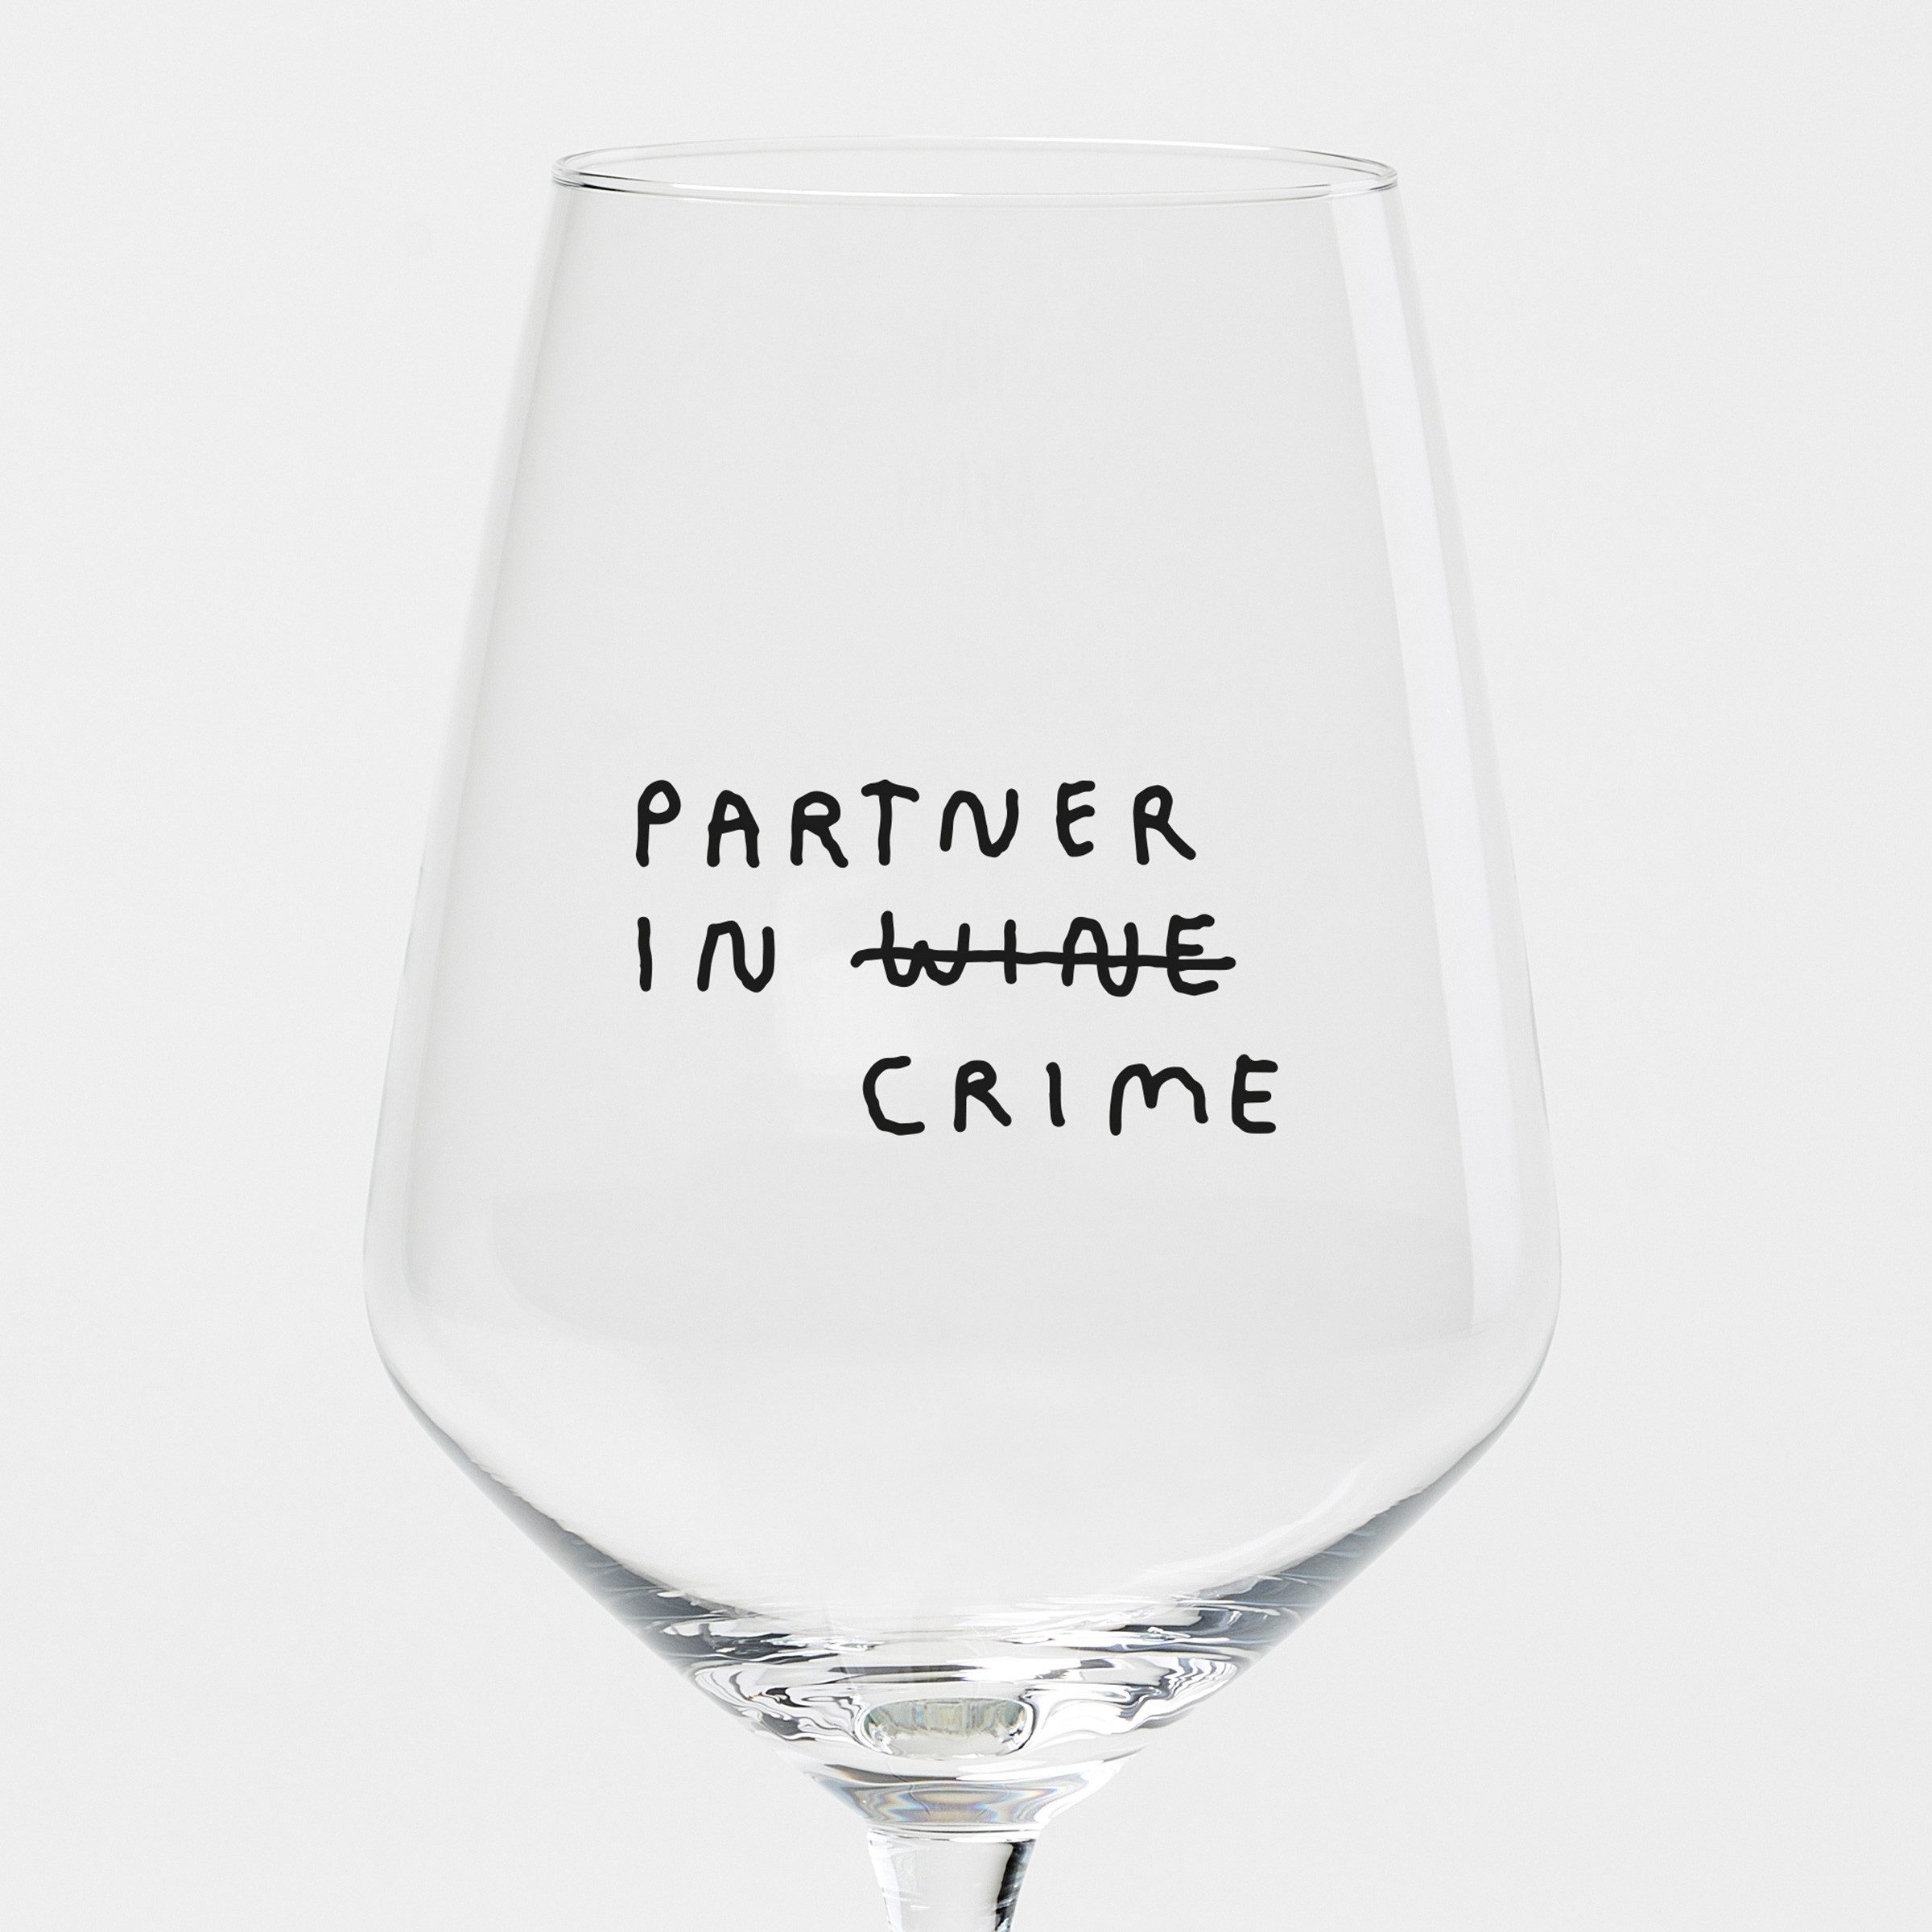 selekkt Weinglas "Partner In Wine" Weinglas by Johanna Schwarzer × selekkt